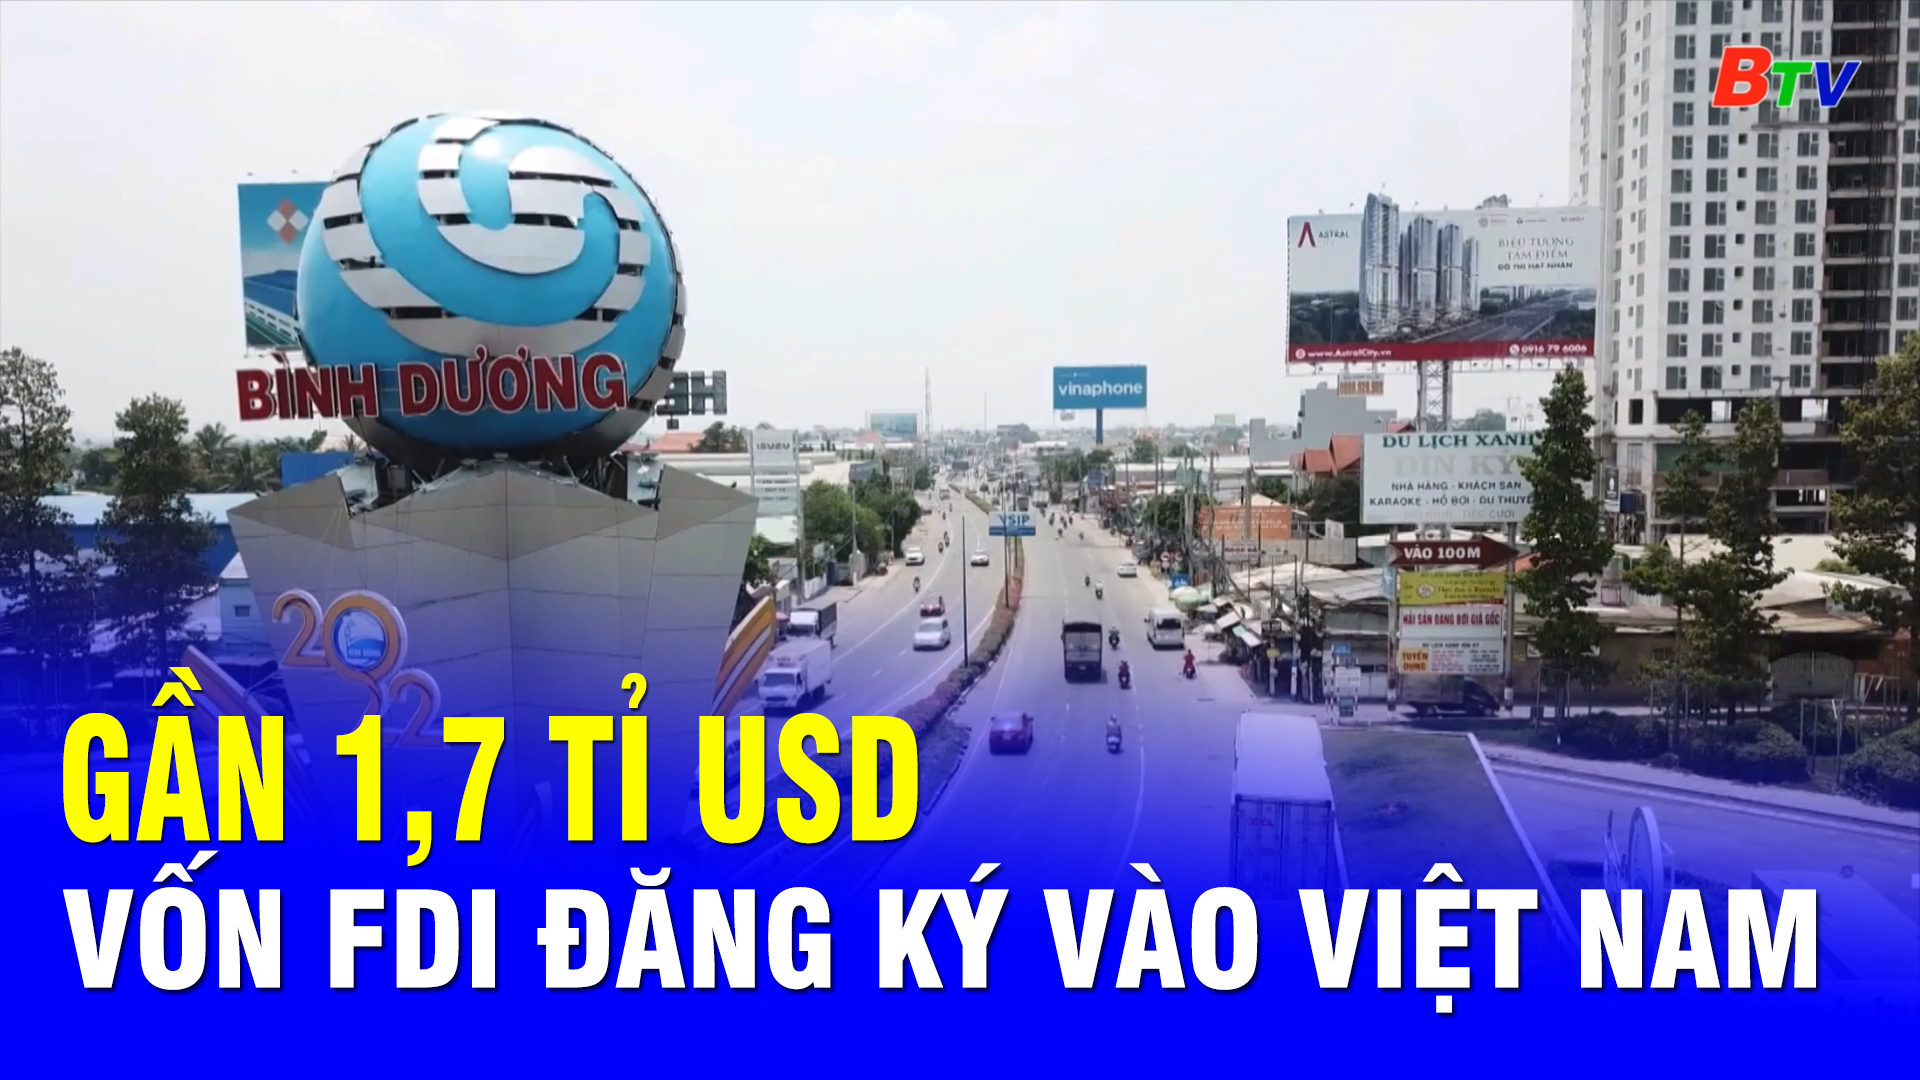 Gần 1,7 tỉ USD vốn FDI đăng ký vào Việt Nam